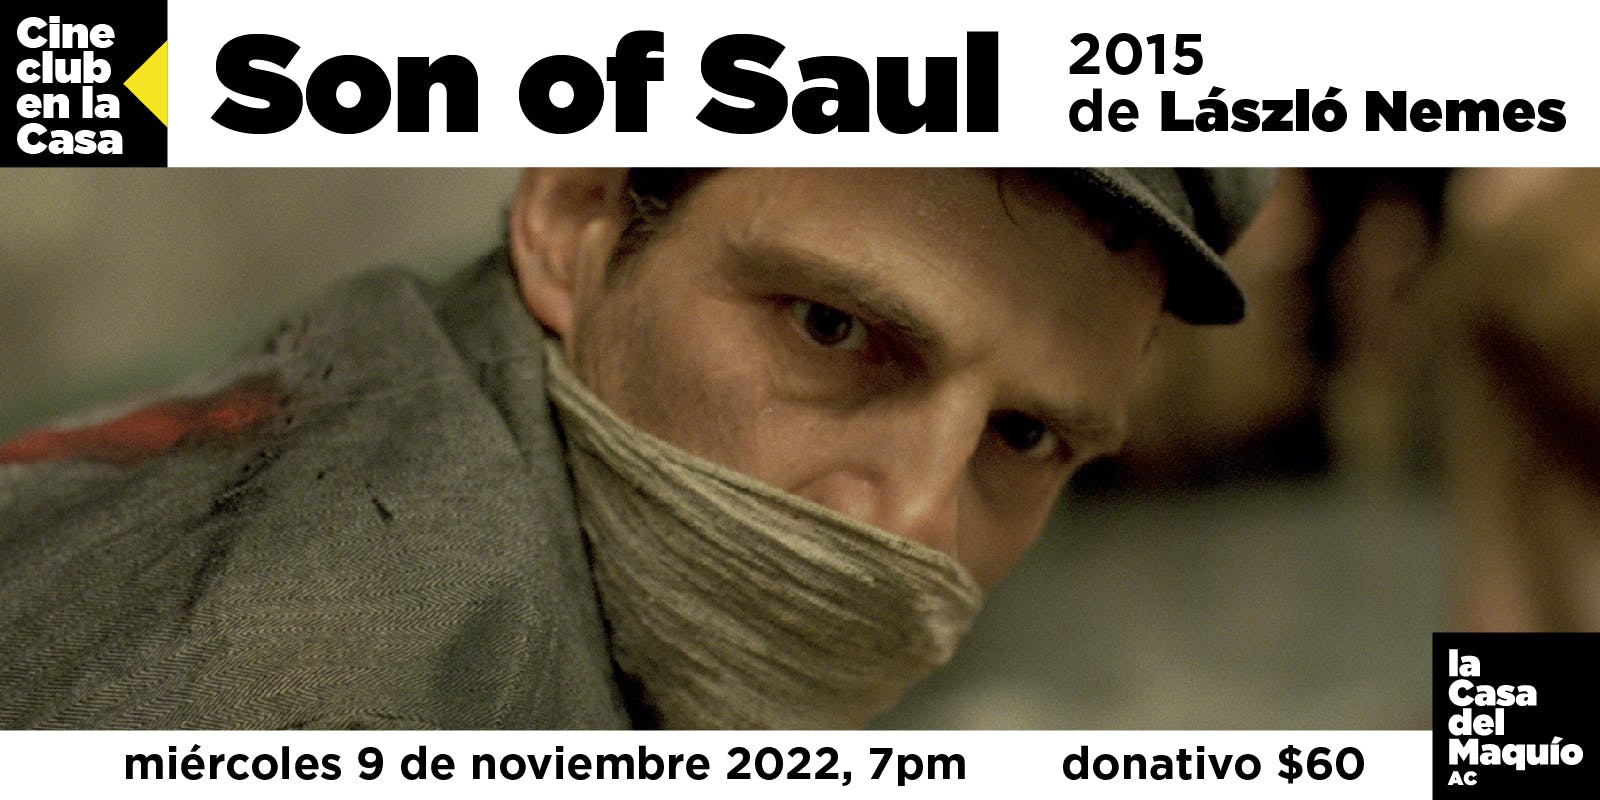 Son of Saul (2015), de László Nemes